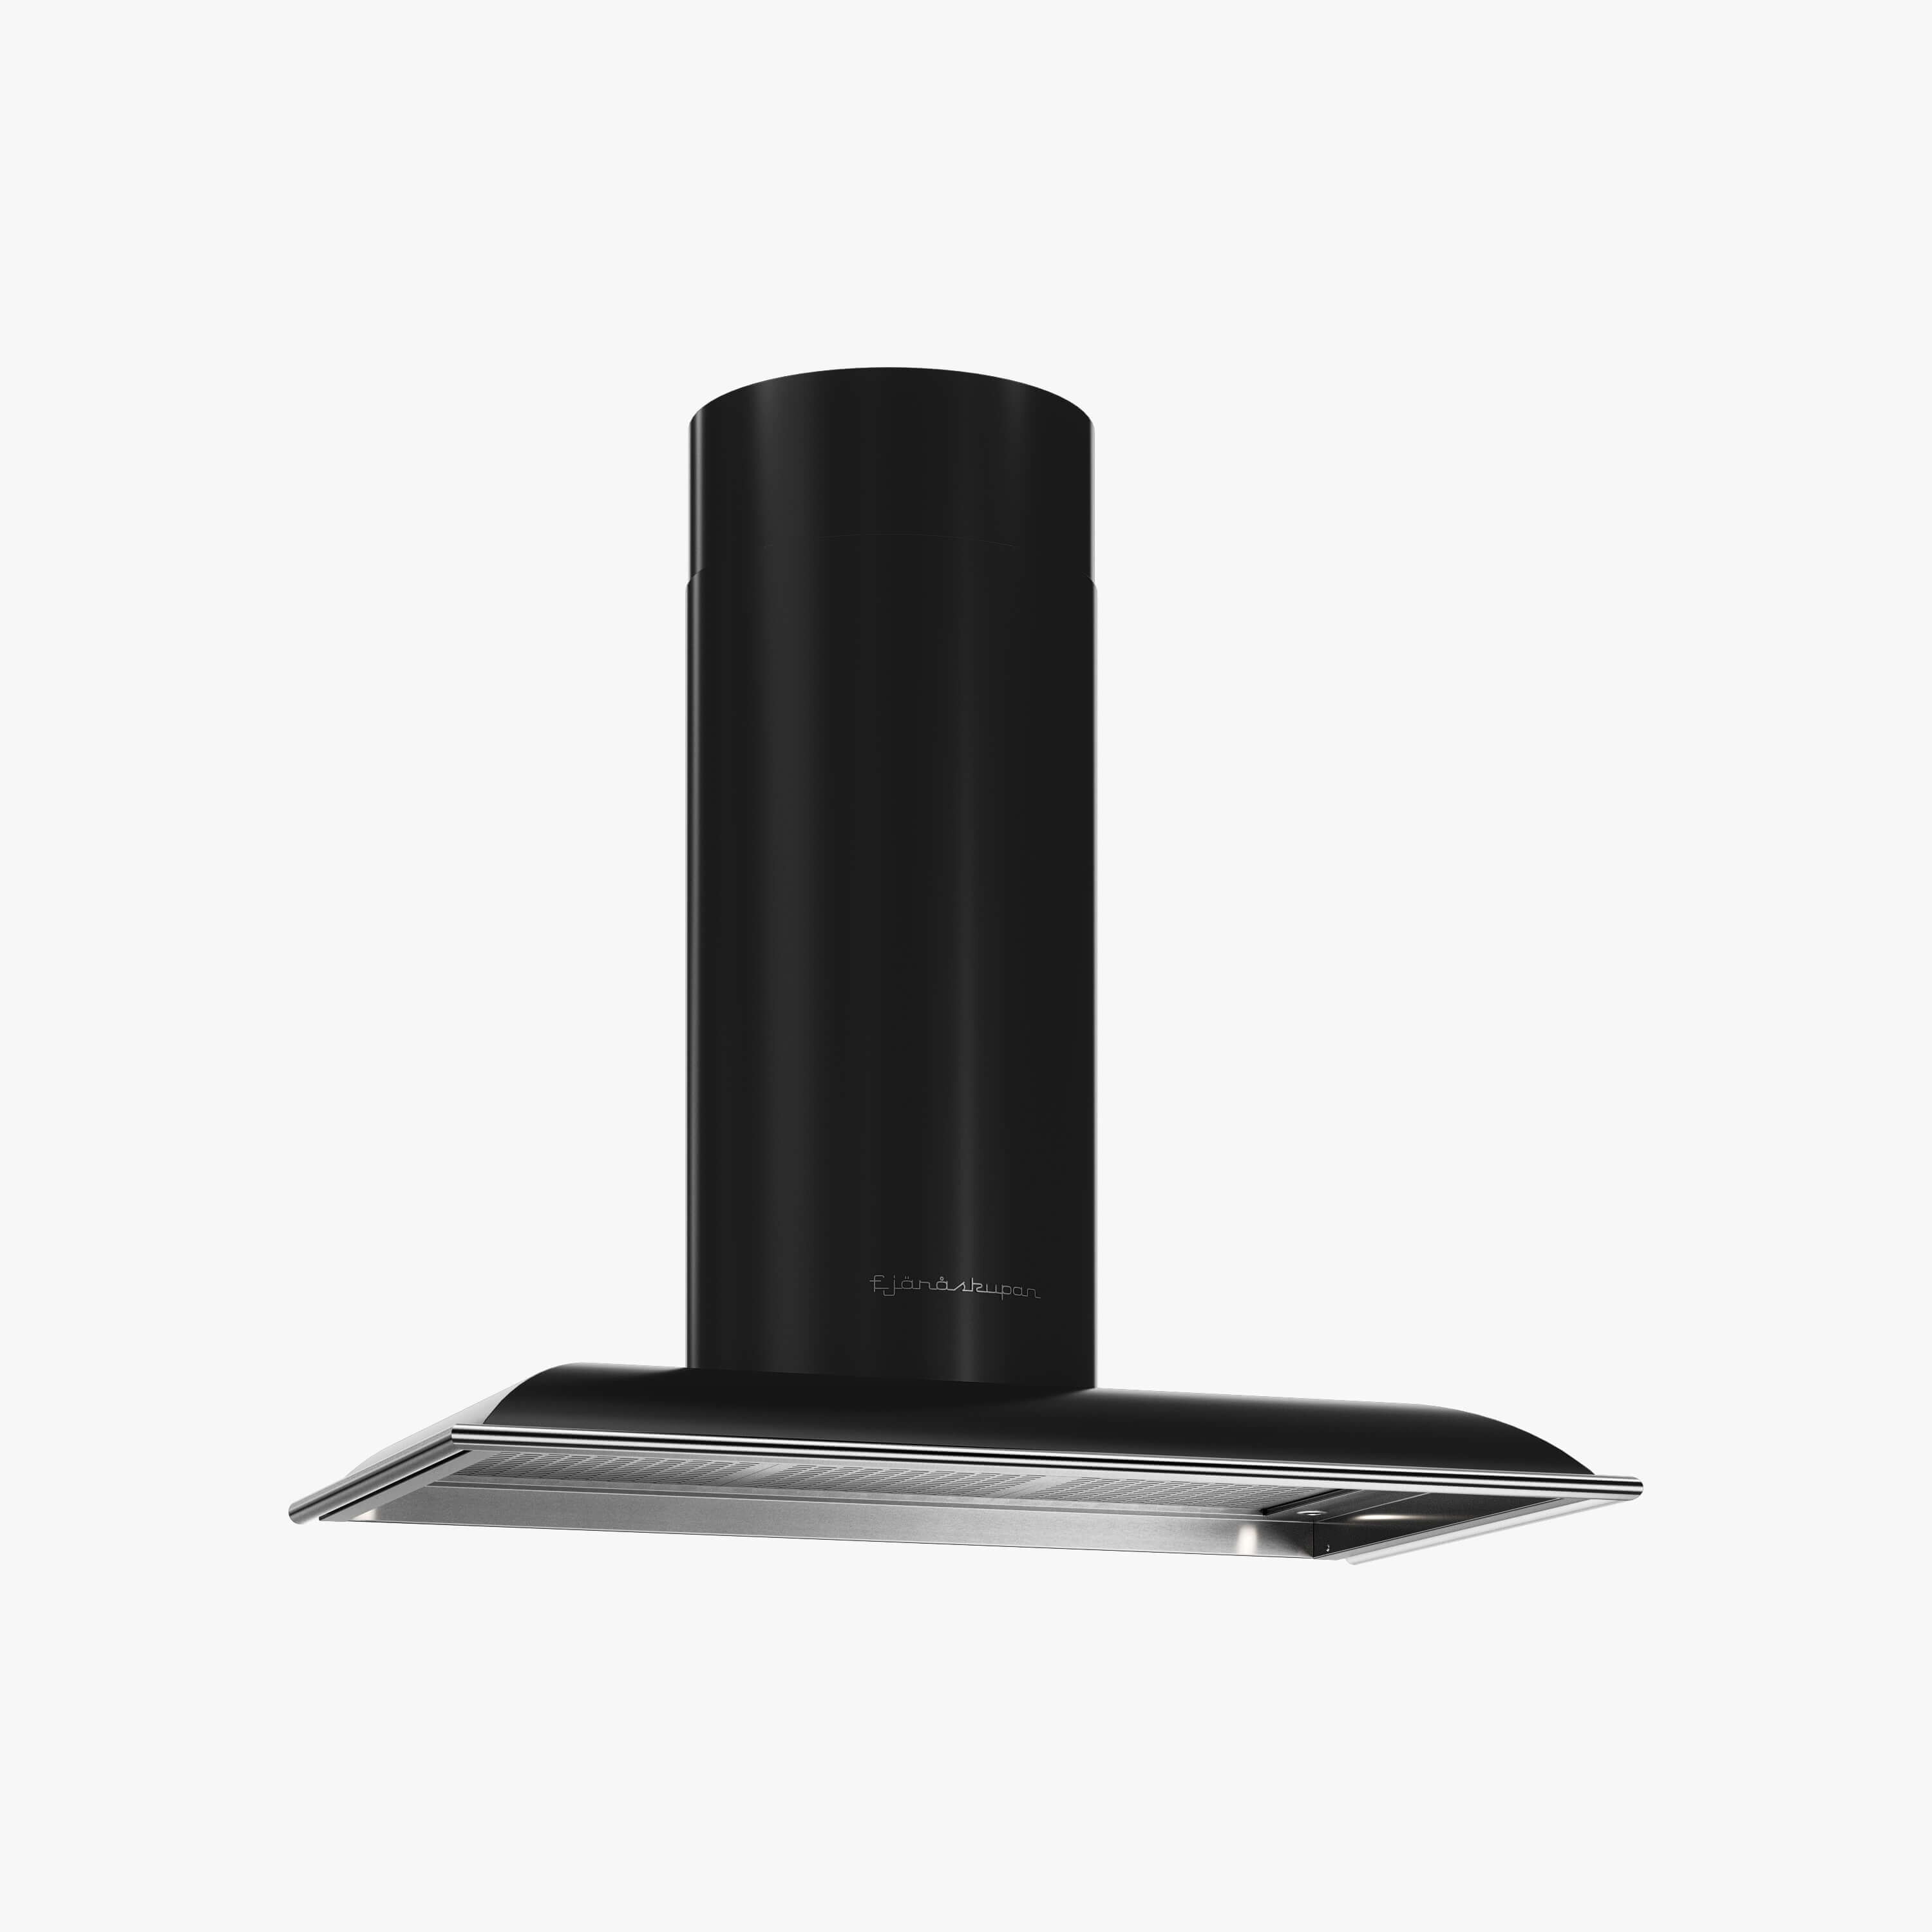 Produktbild på vägghängda köksfläkten Blender i svart utförande från Fjäråskupan.